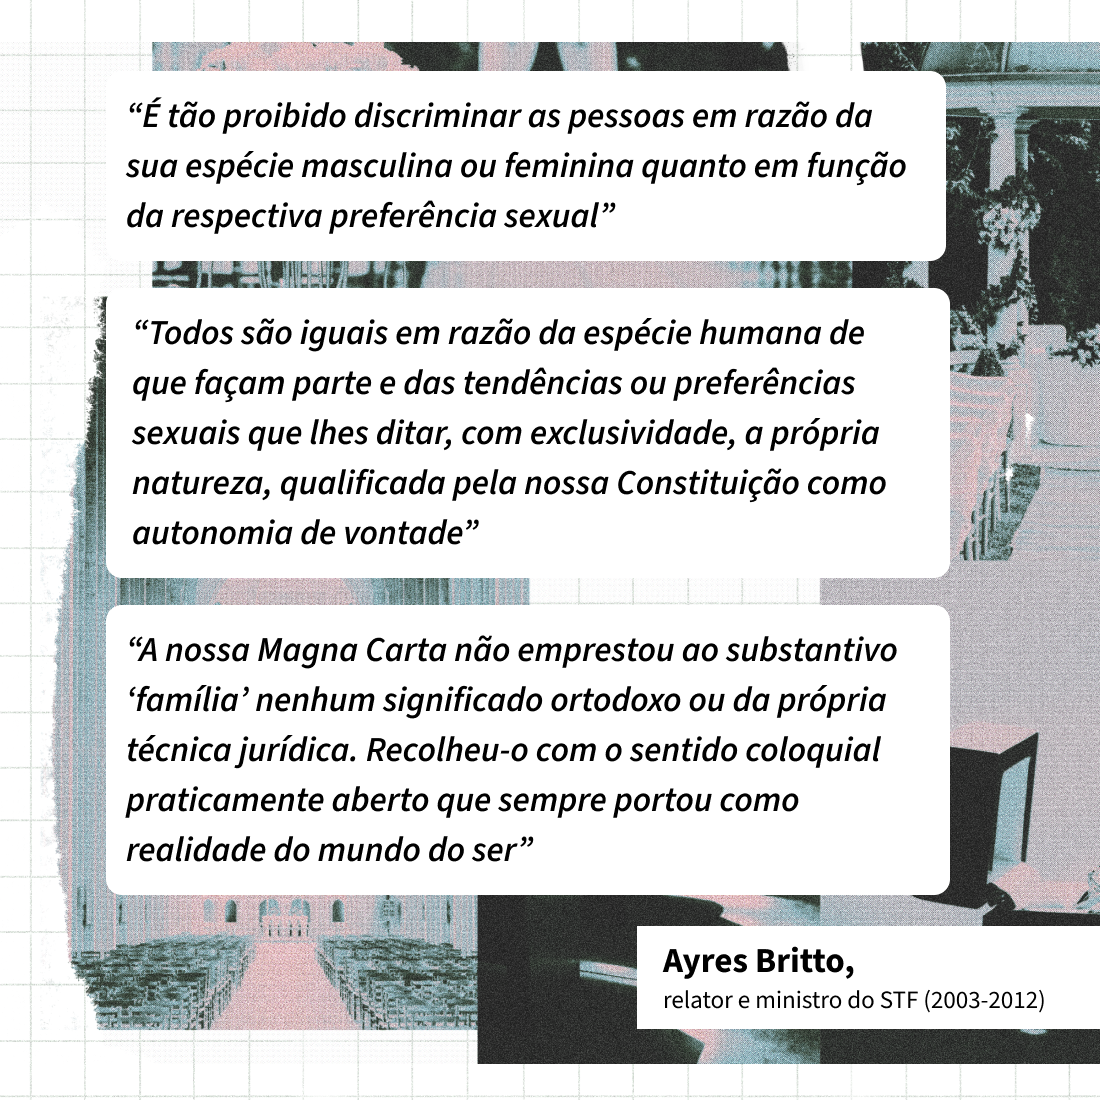 Três trechos do relatório do ex-ministro Ayres Britto, que argumentou que a Constituição garante a igualdade entre homens e mulheres a despeito de sua orientação sexual